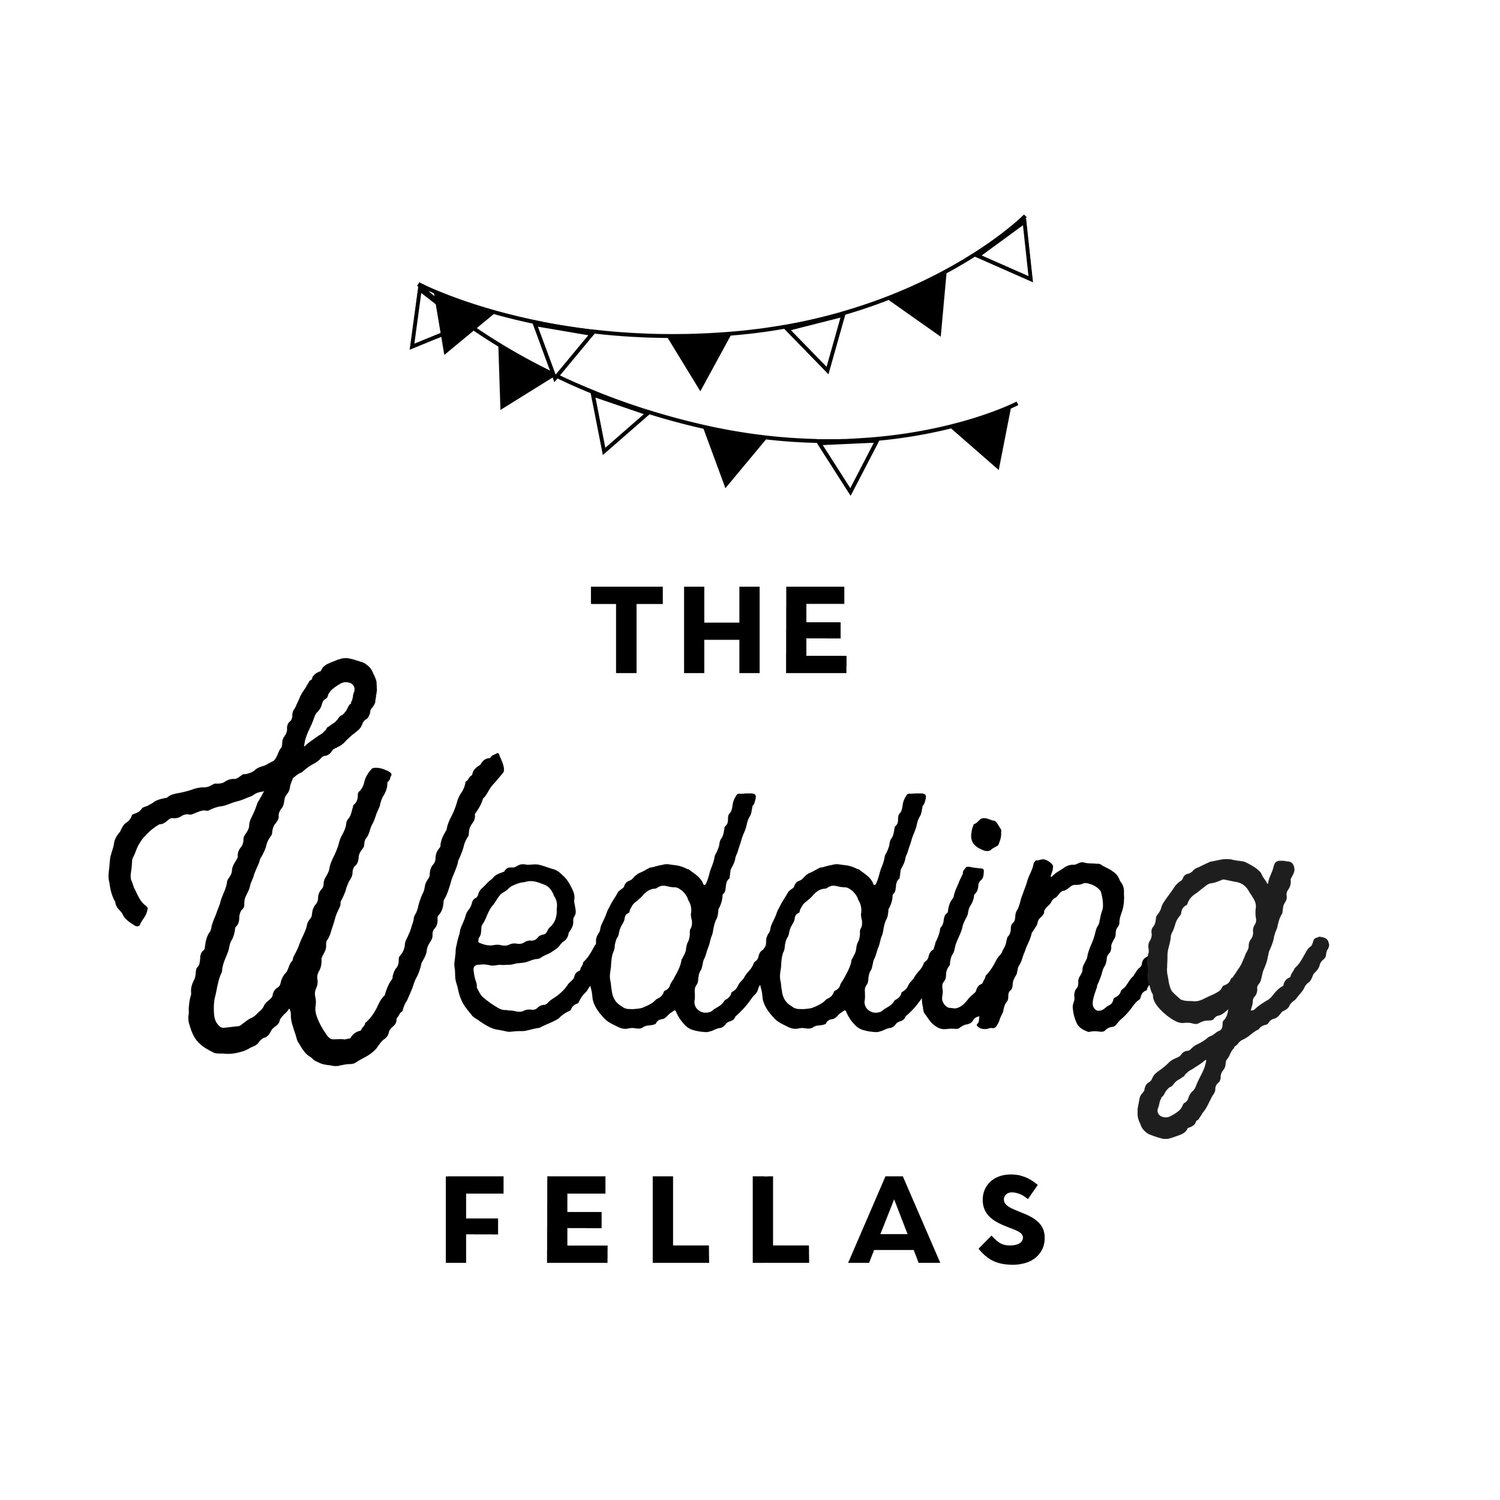 THE WEDDING FELLAS 